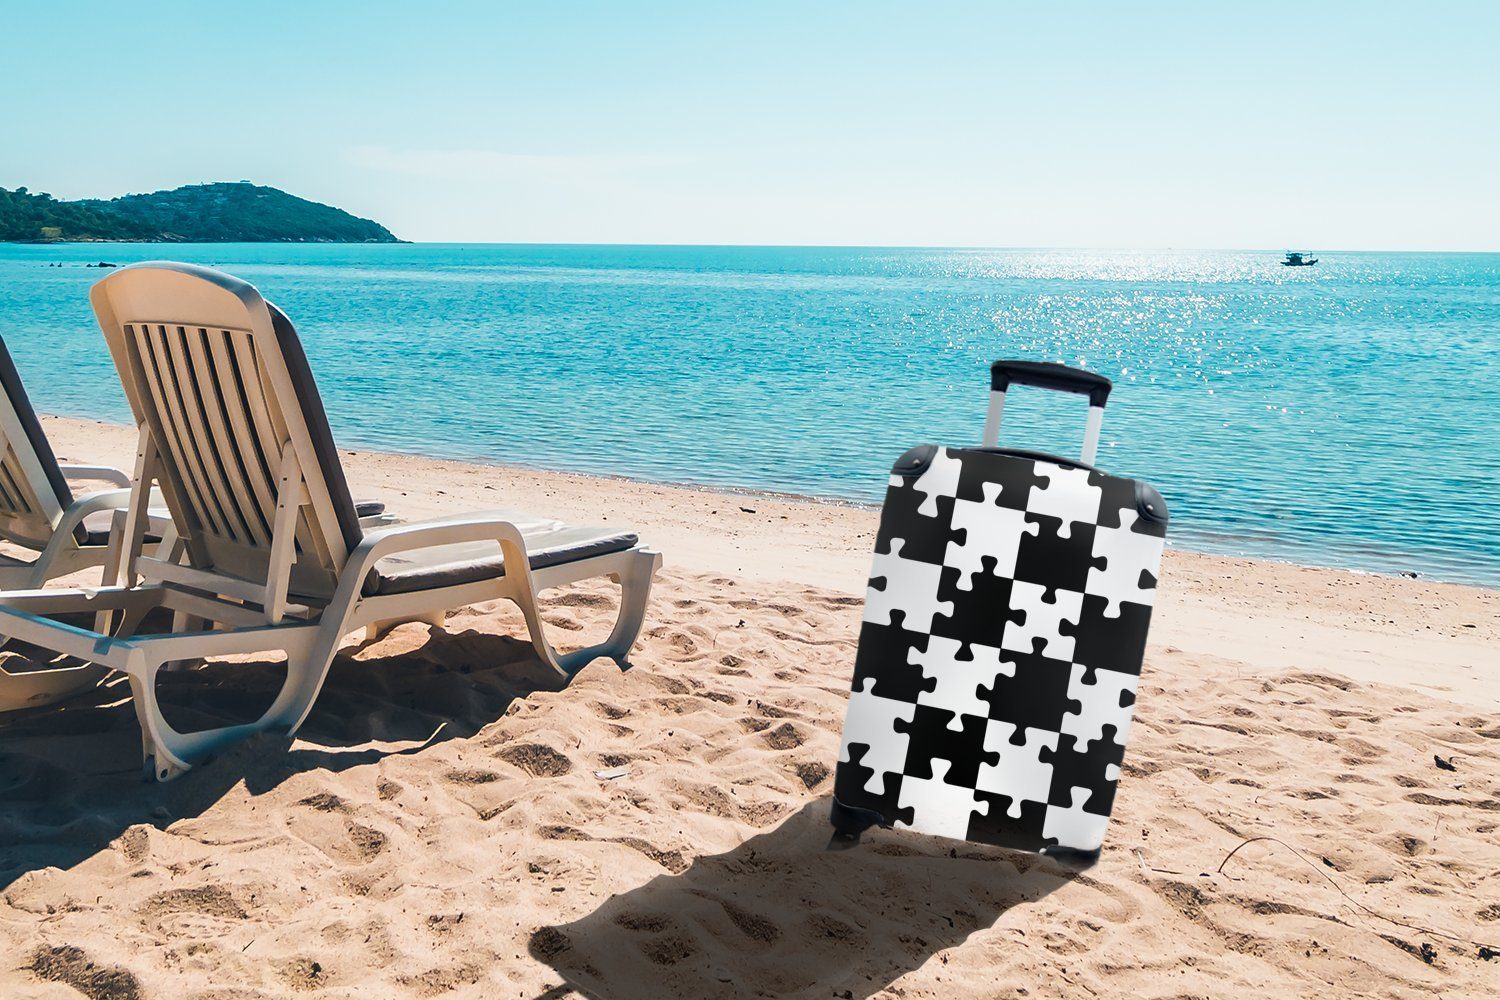 Ferien, für Muster, - Handgepäck MuchoWow Reisekoffer Puzzle Trolley, 4 - Reisetasche Handgepäckkoffer Schach mit Rollen, rollen,